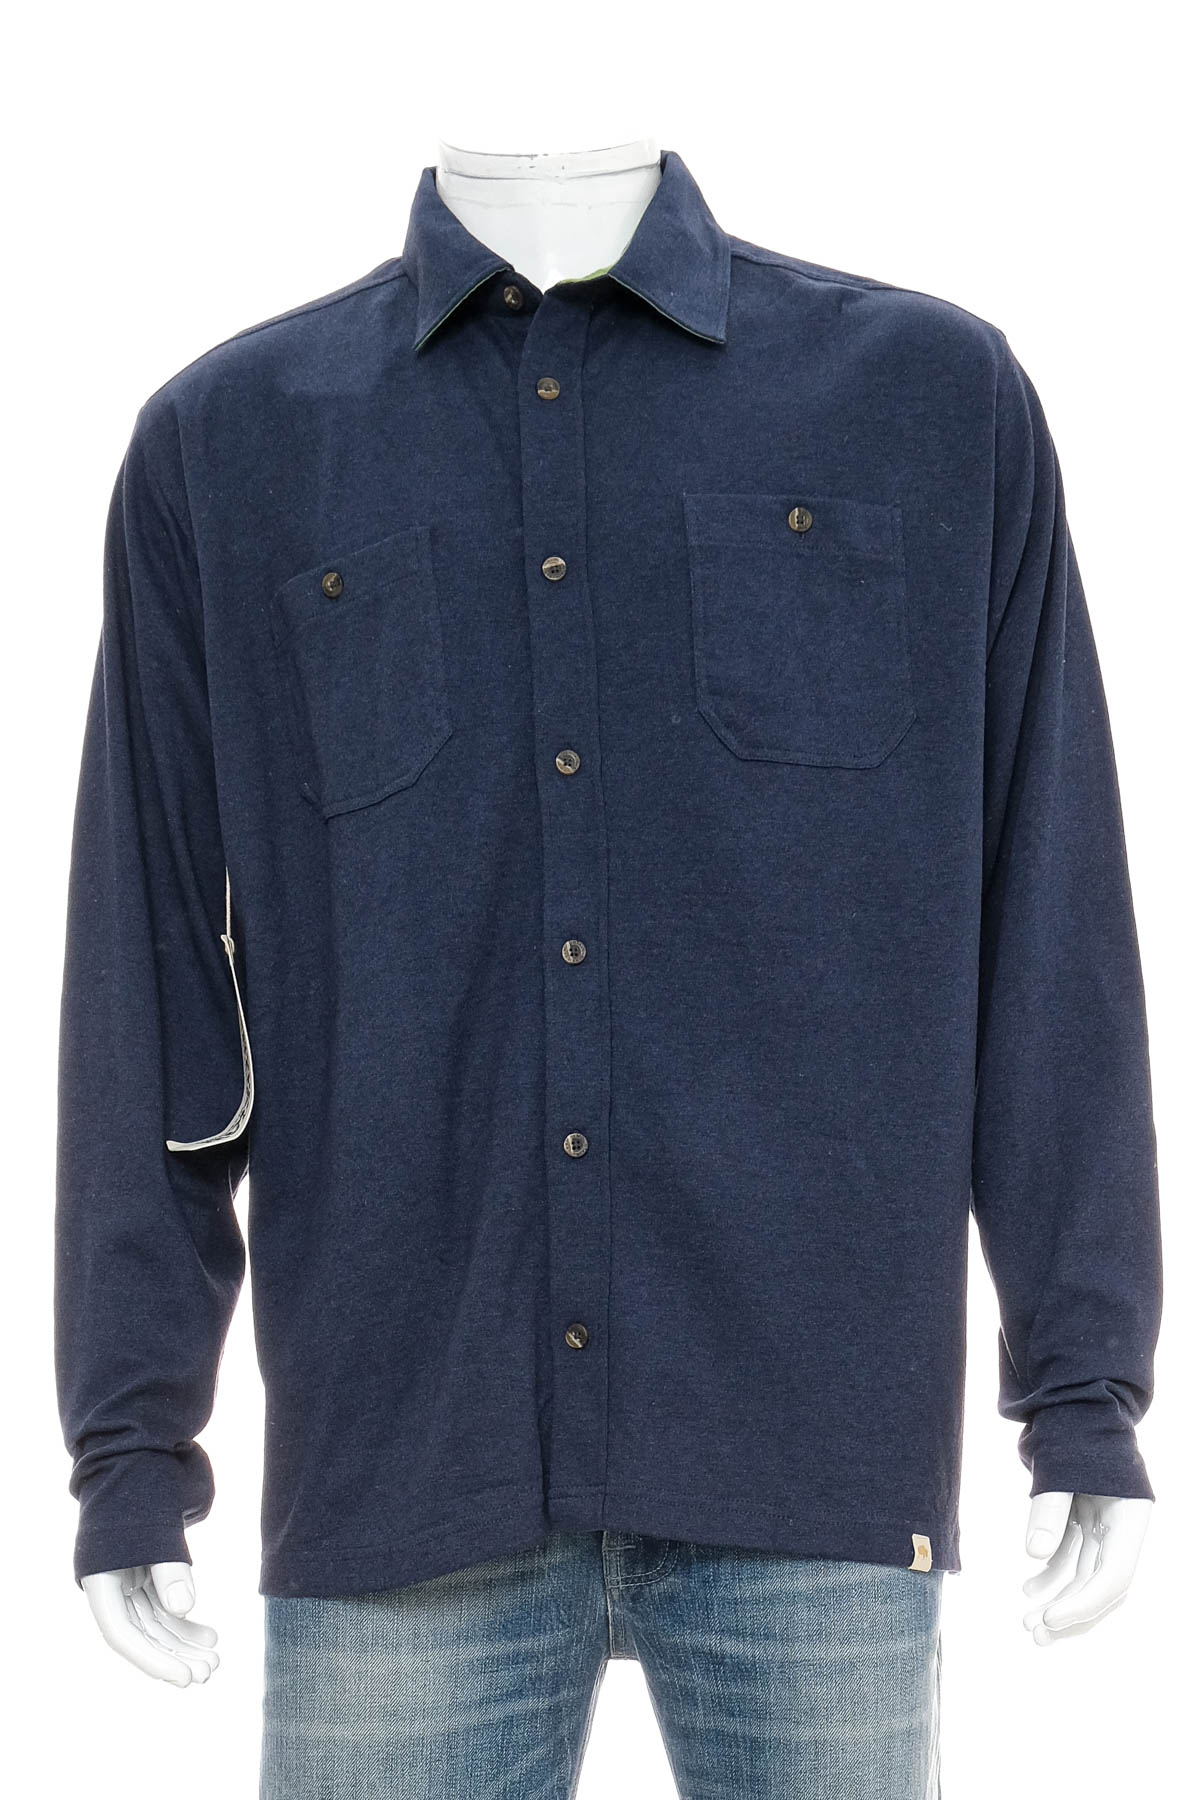 Ανδρικό πουκάμισο - Mountain Khakis - 0